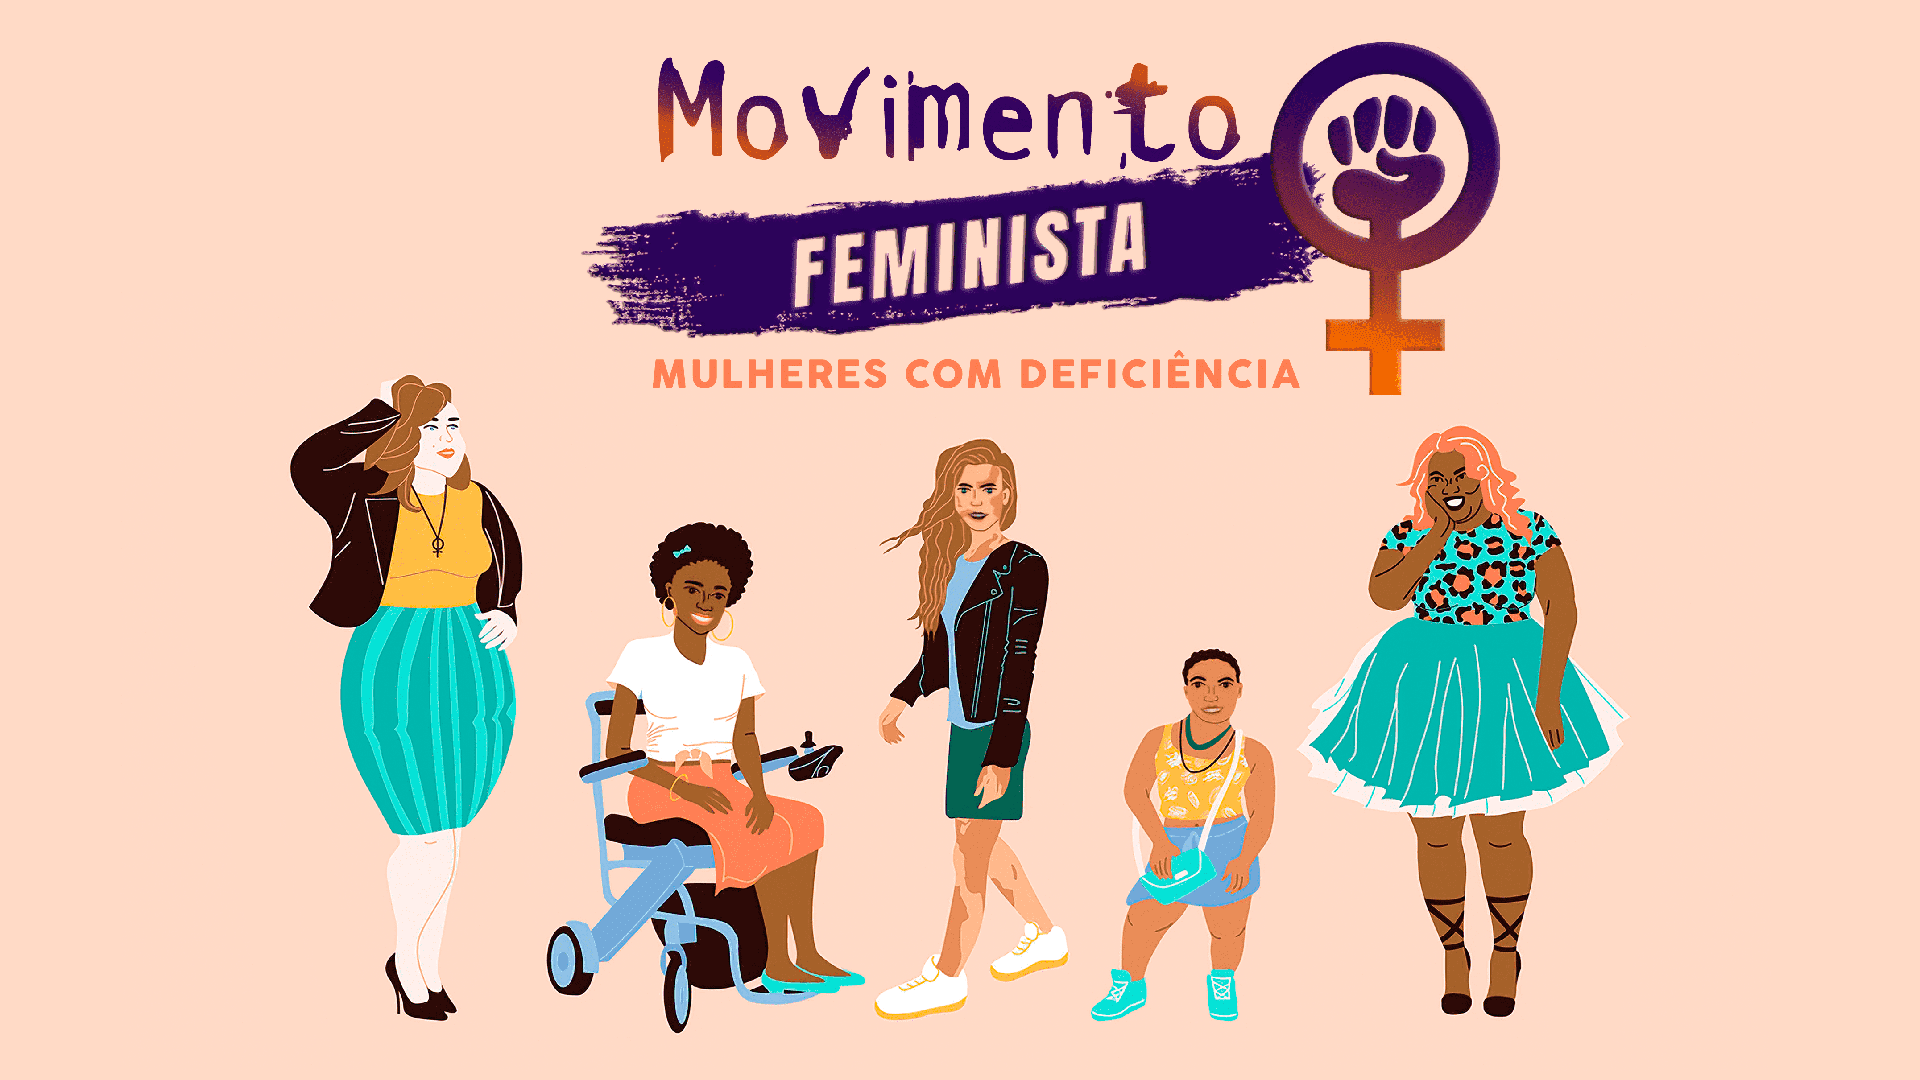 Ilustração sobre o Feminismo e as Mulheres com Deficiência